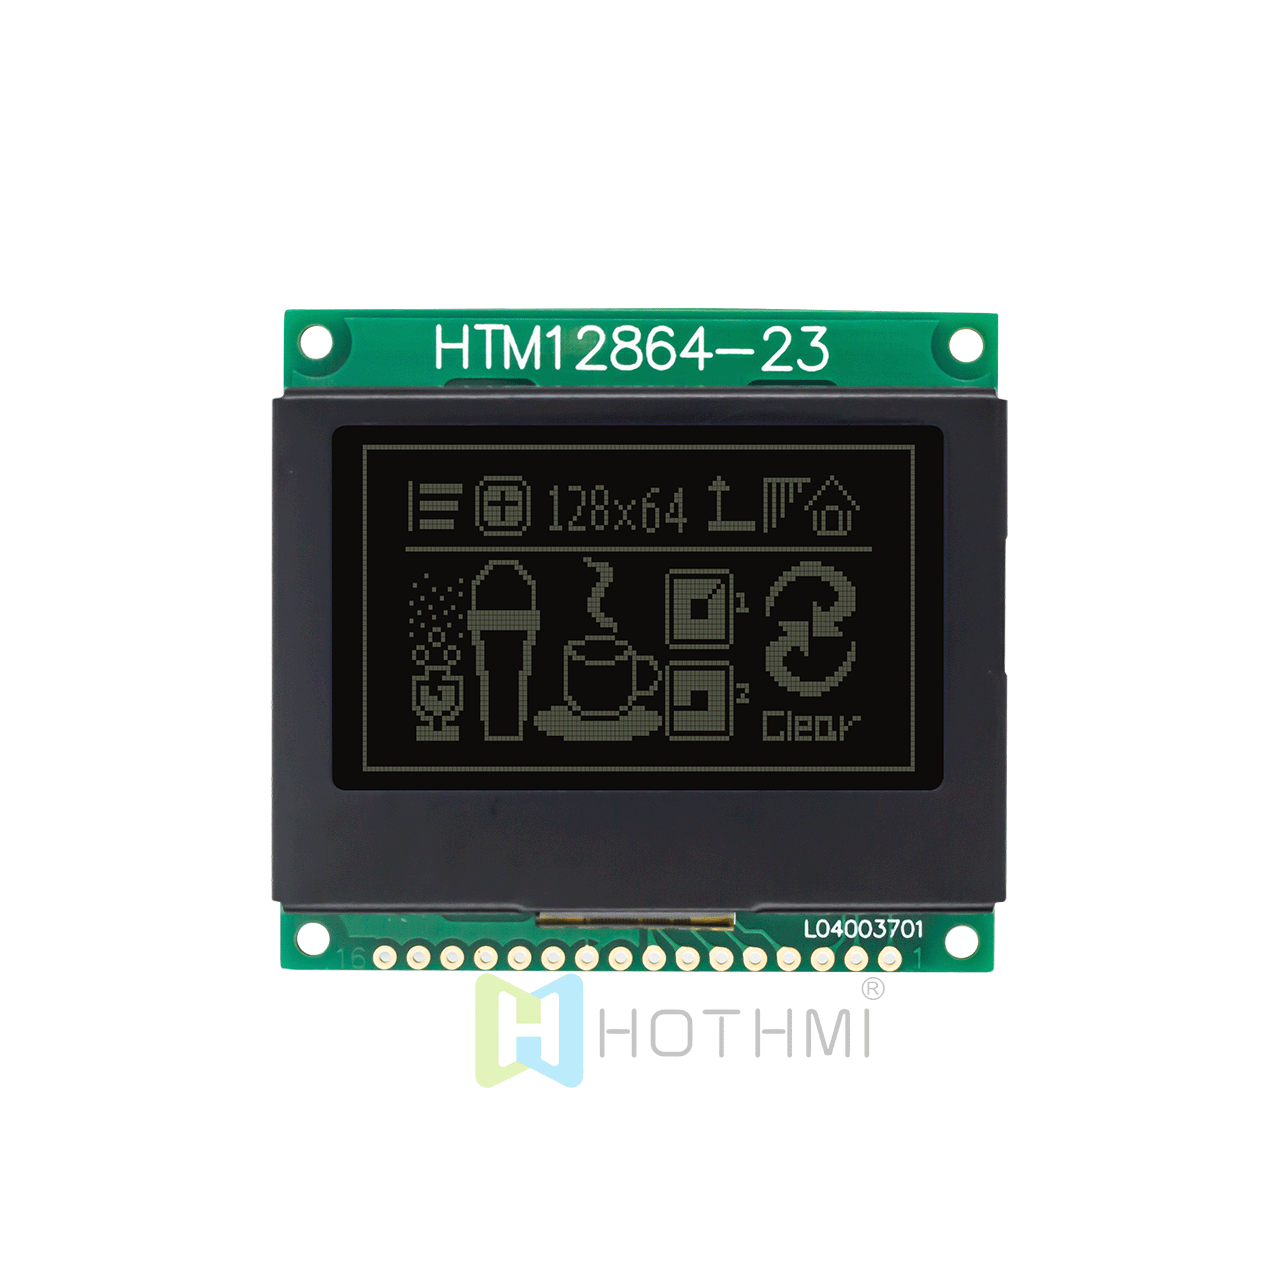 2.0寸128x64低价图形液晶模块/128x64图形LCD模组/ST7565控制芯片/5.0 黑底白字